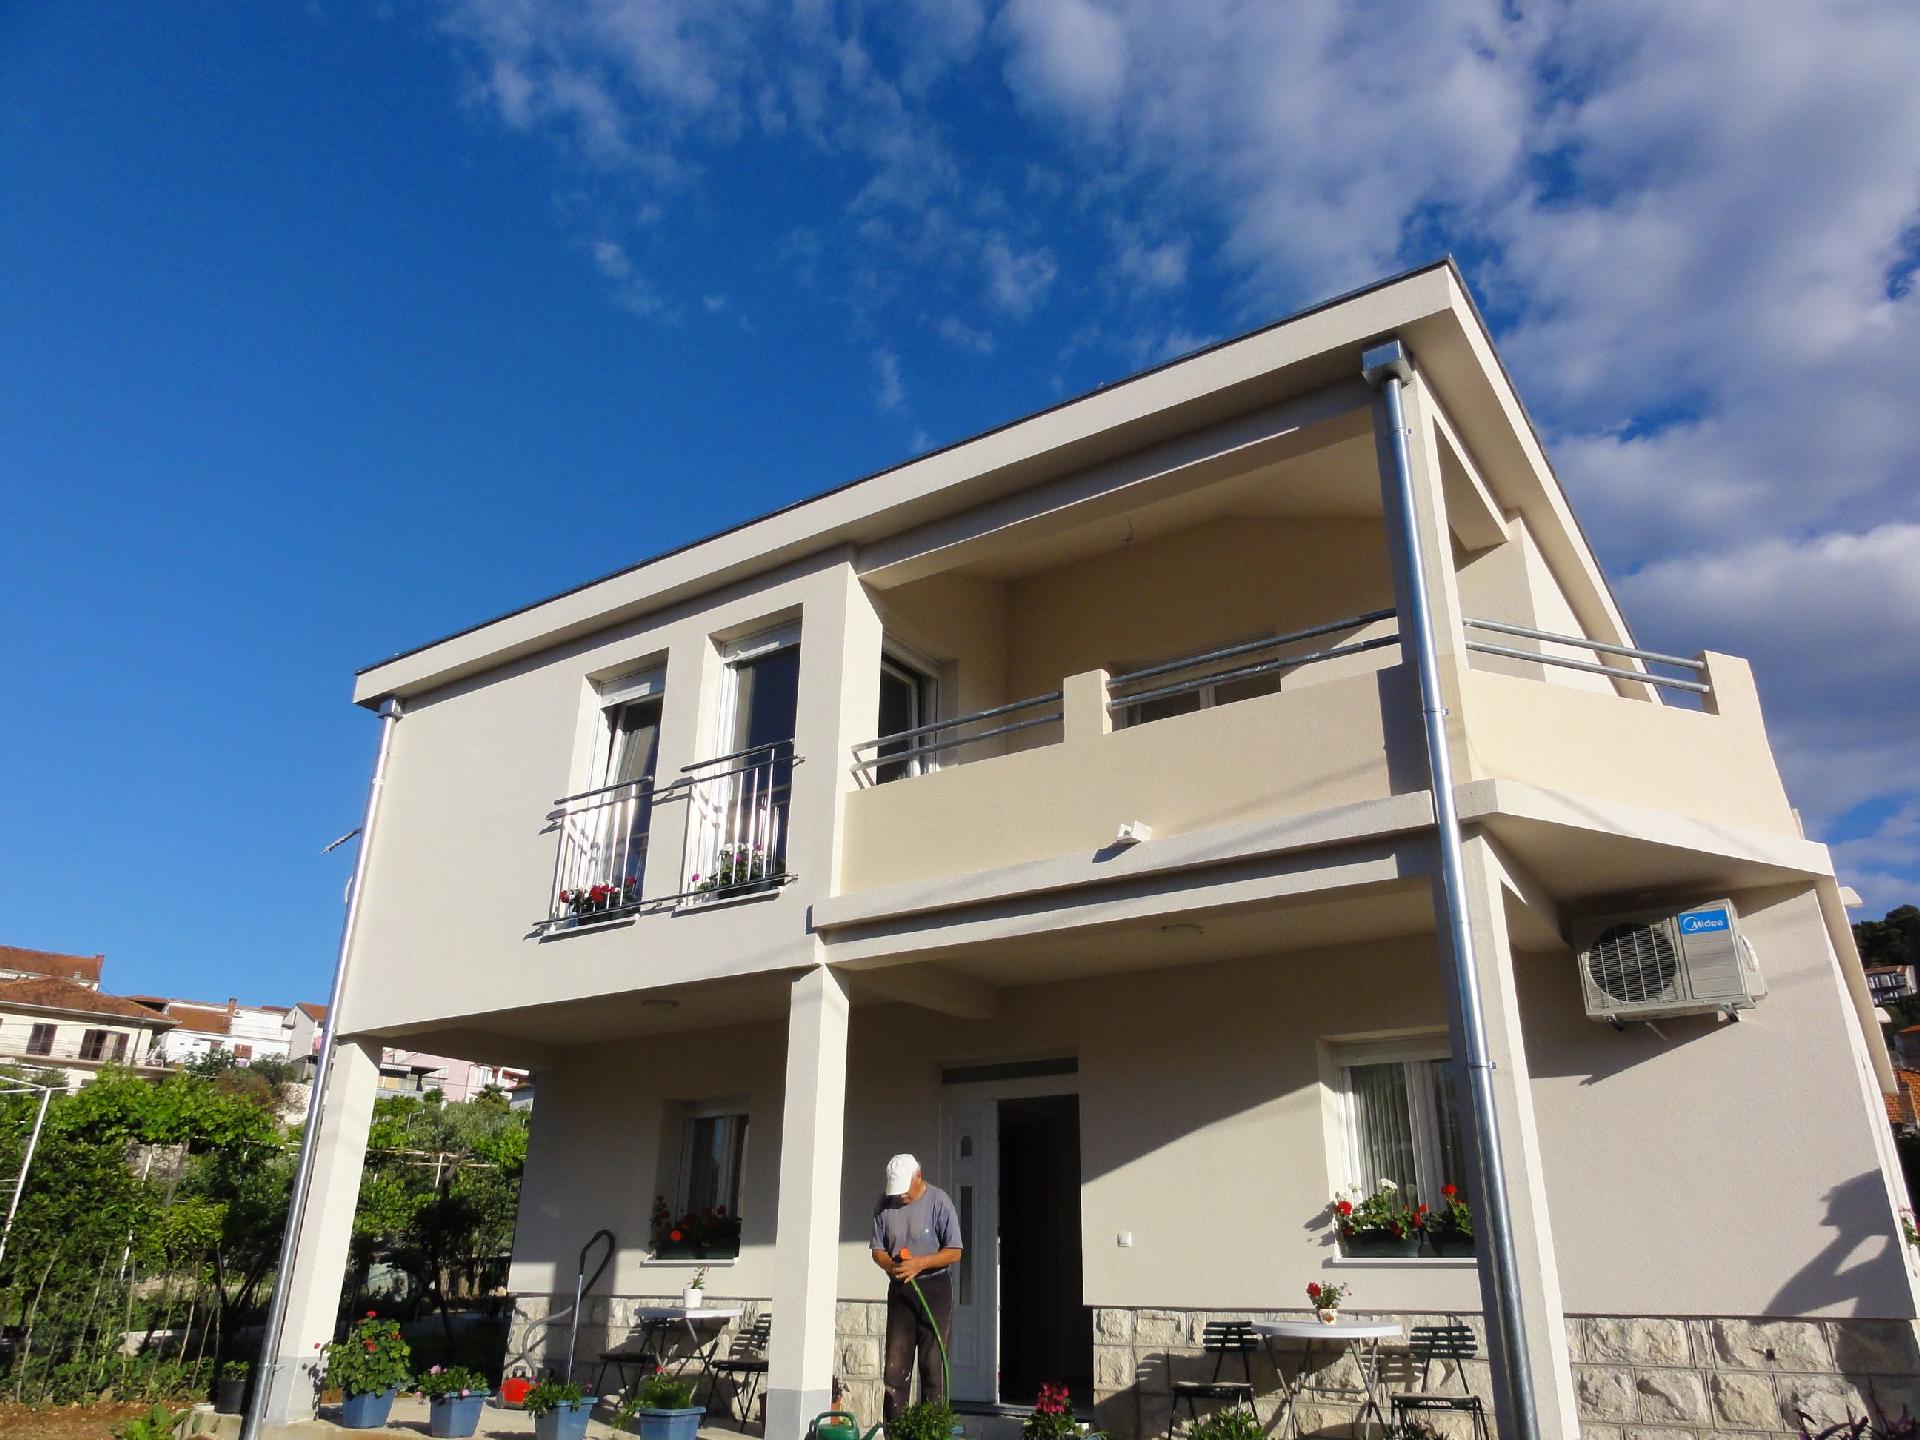 Ferienwohnung für 3 Personen in Trogir, Dalma Ferienhaus  Trogir